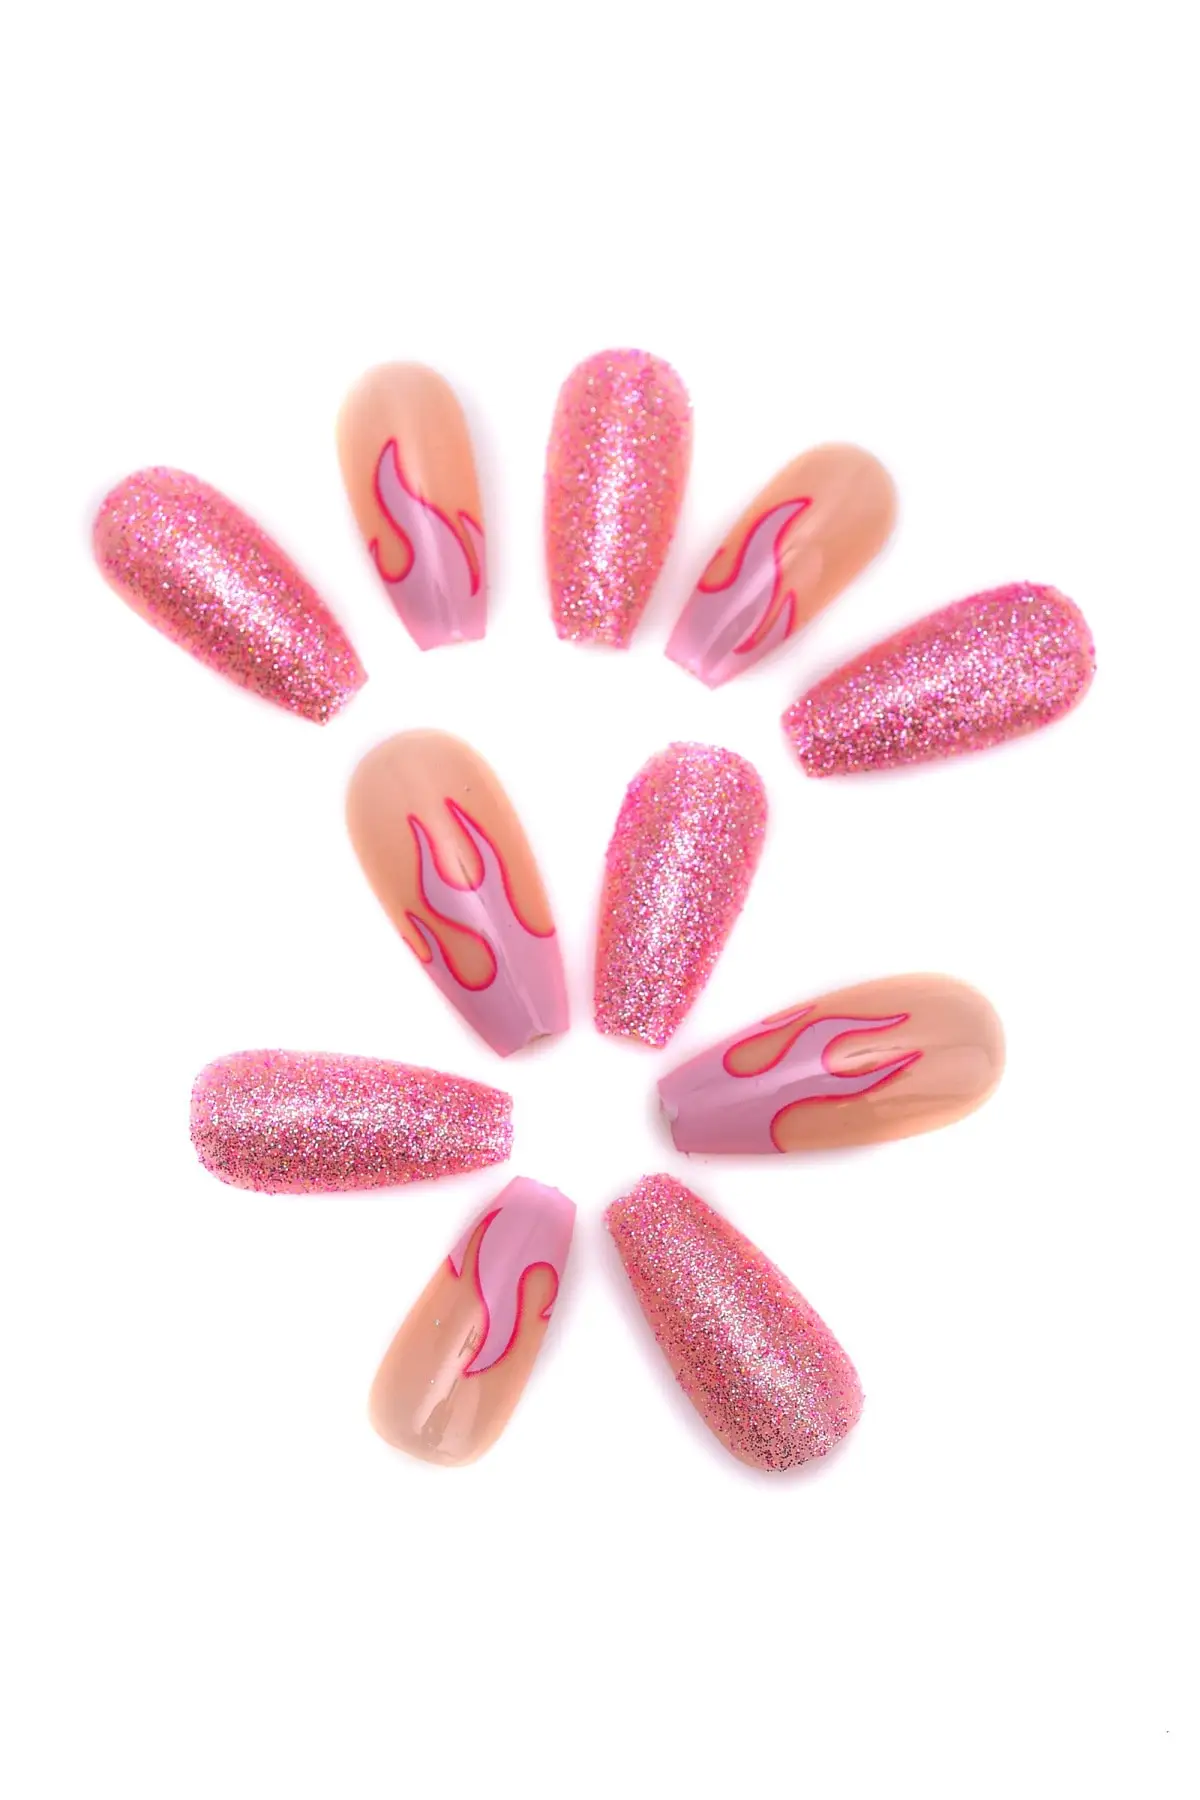 

Новые искусственные ногти и клей с розовым узором для женщин, трендовый дизайн ногтей, маникюр, Красота и здоровье, уход